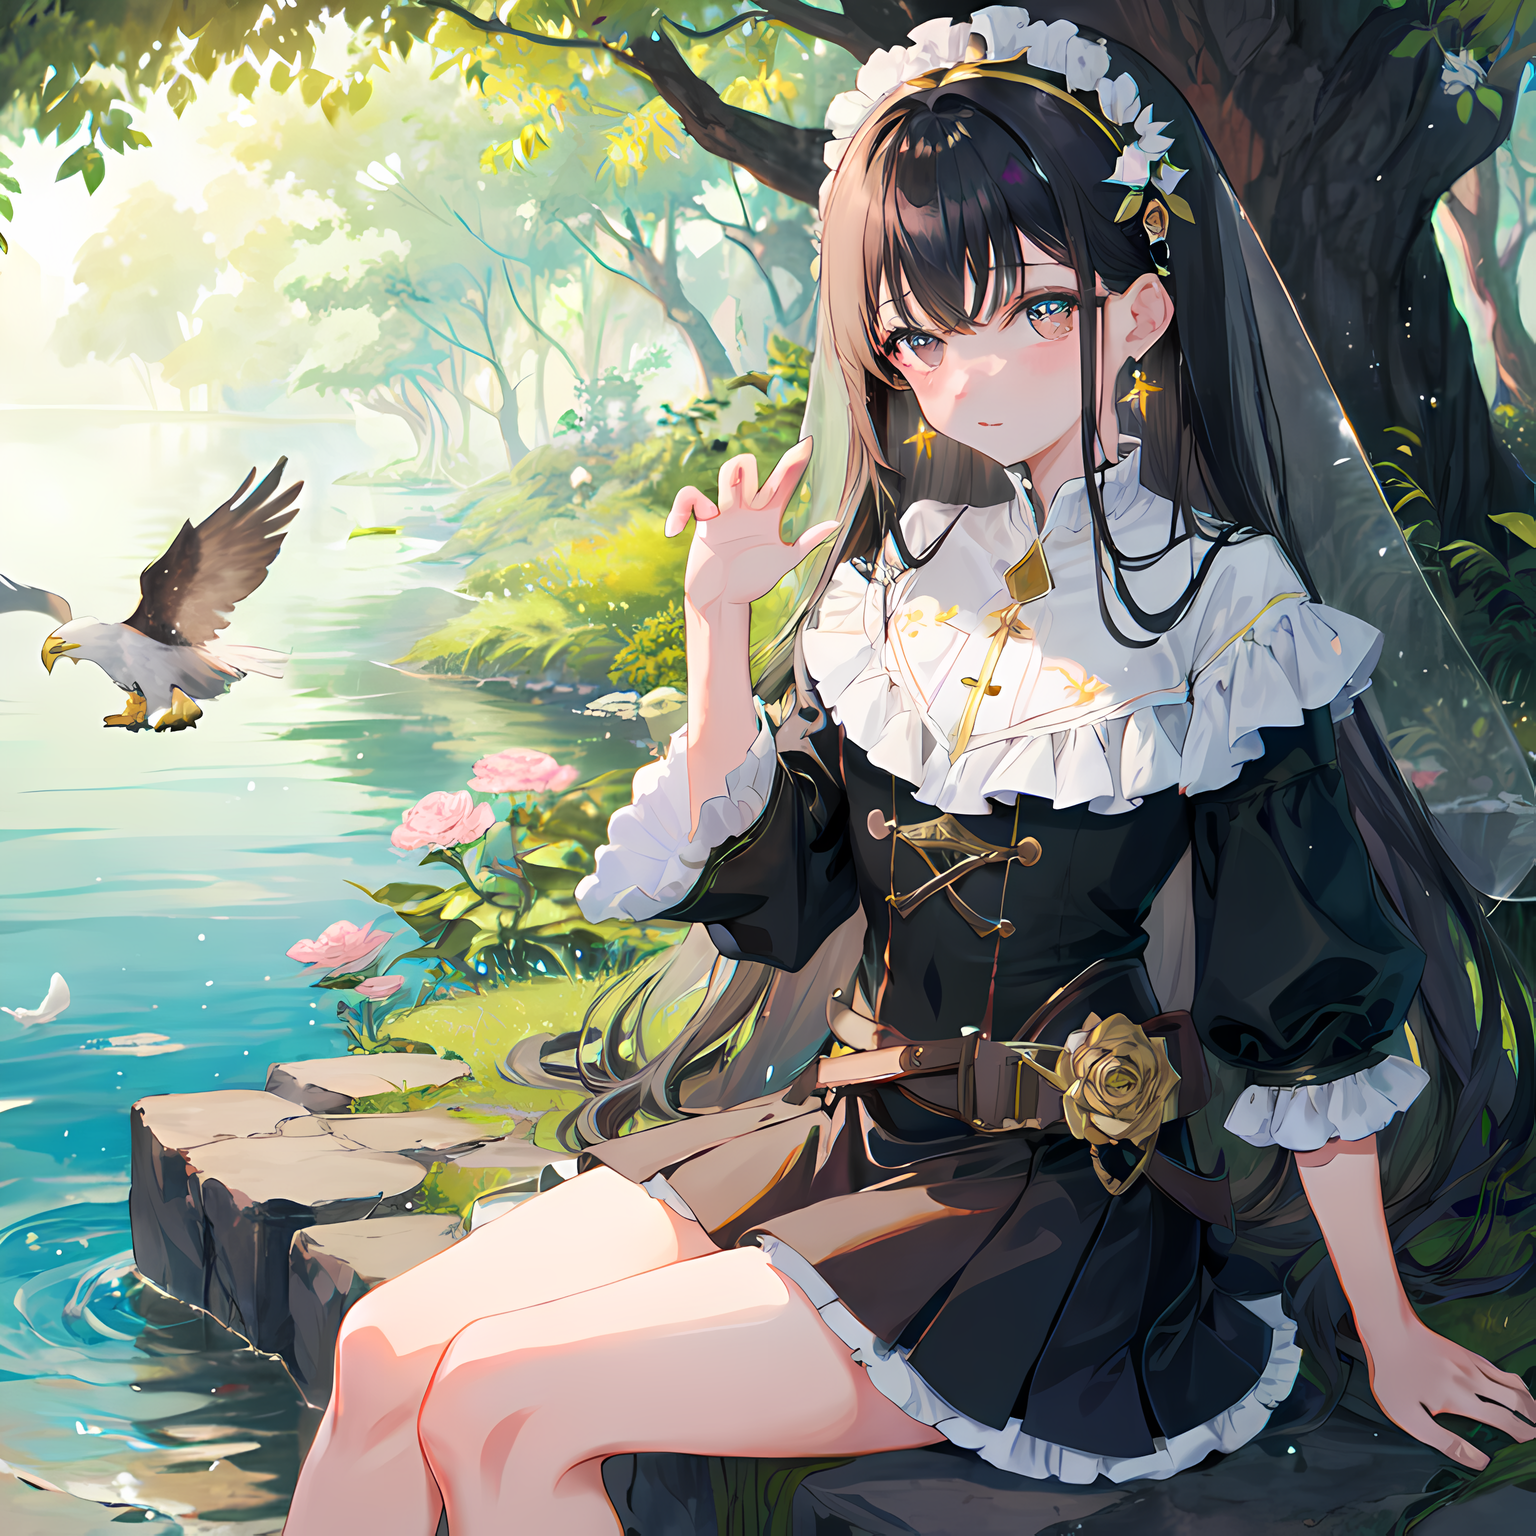 长发少女在野外湖边闲坐，玩弄小鸟，边享受大自然，伴着瀑布潺潺声。插画图片壁纸